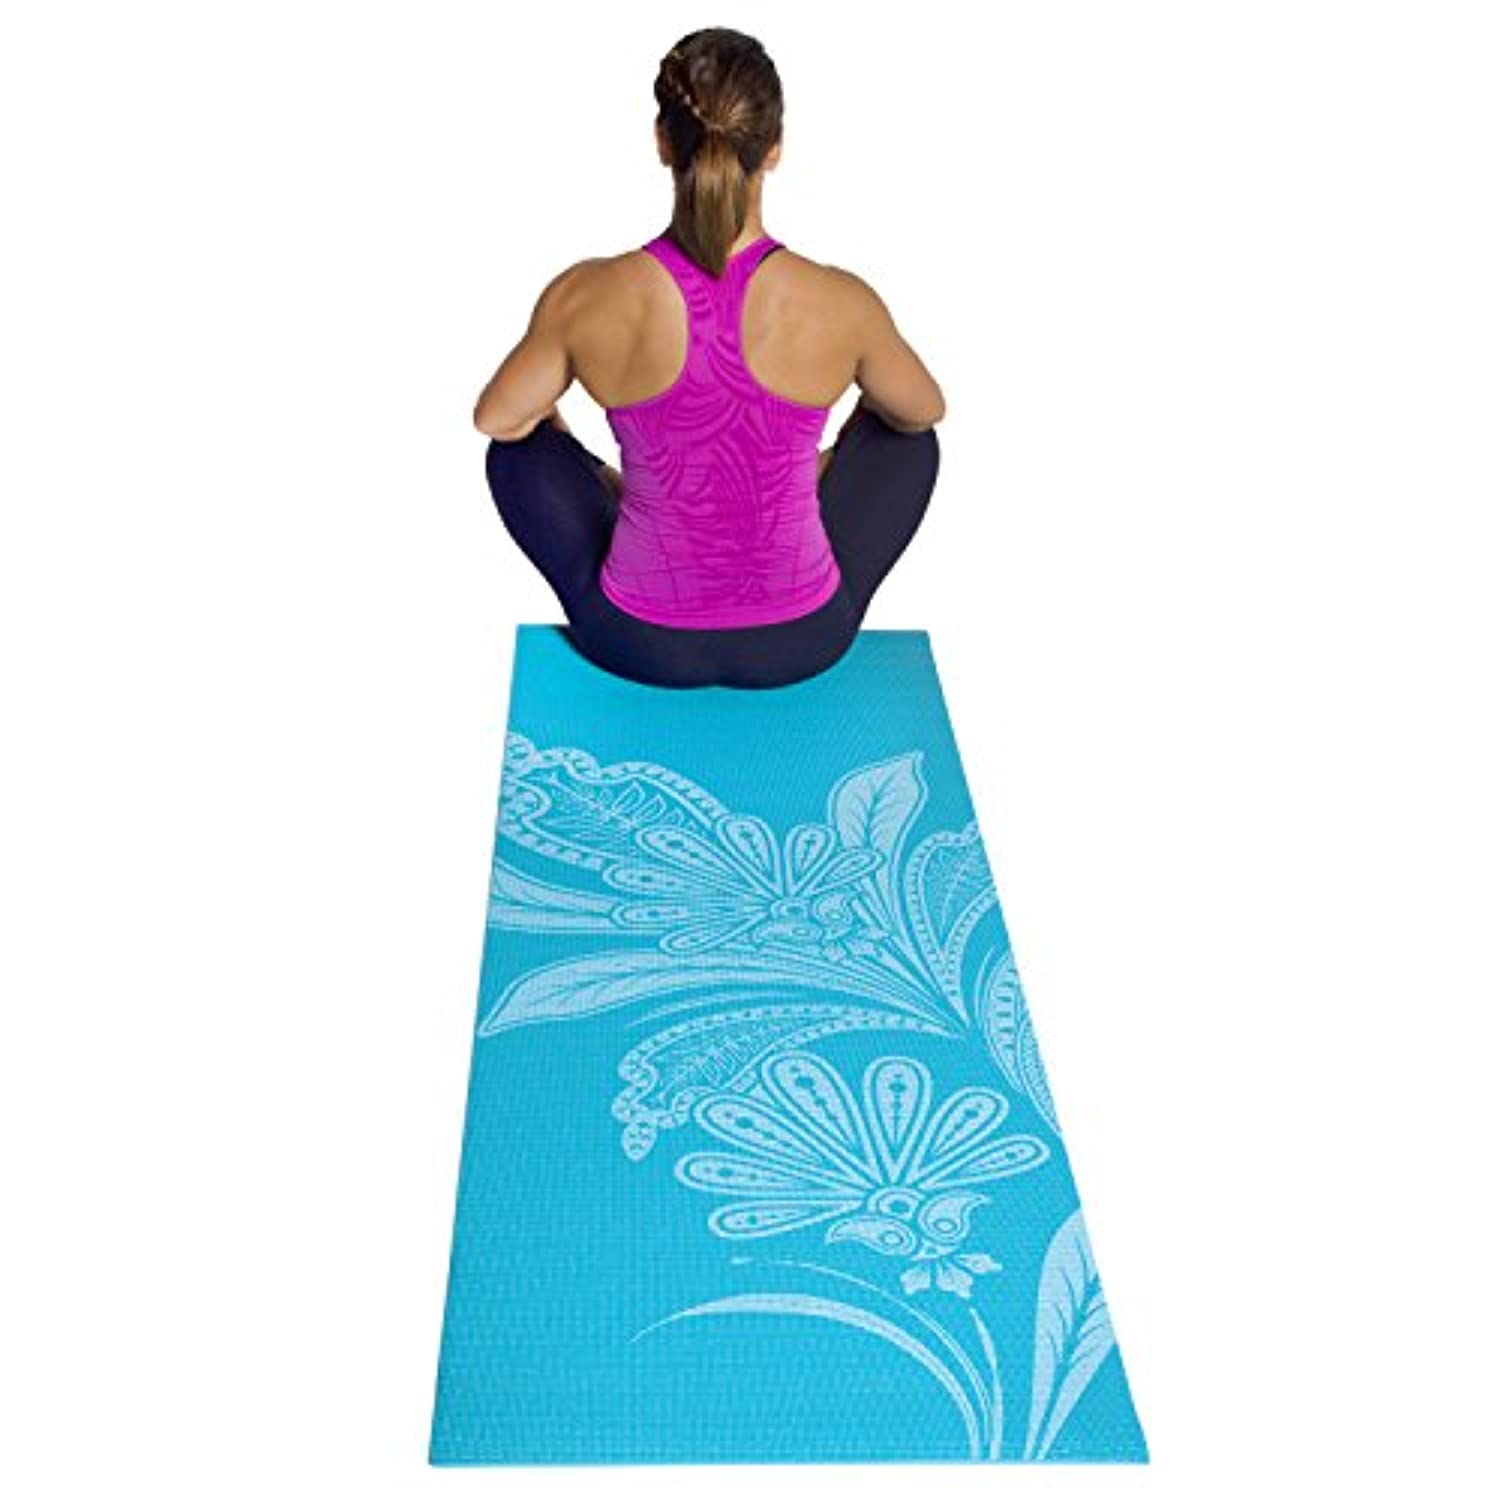 Esterilla de yoga ecológica y cómoda con correa de transporte para hacer  ejercicio, yoga, por USA Cash and Carry - PrimeTrendz TM